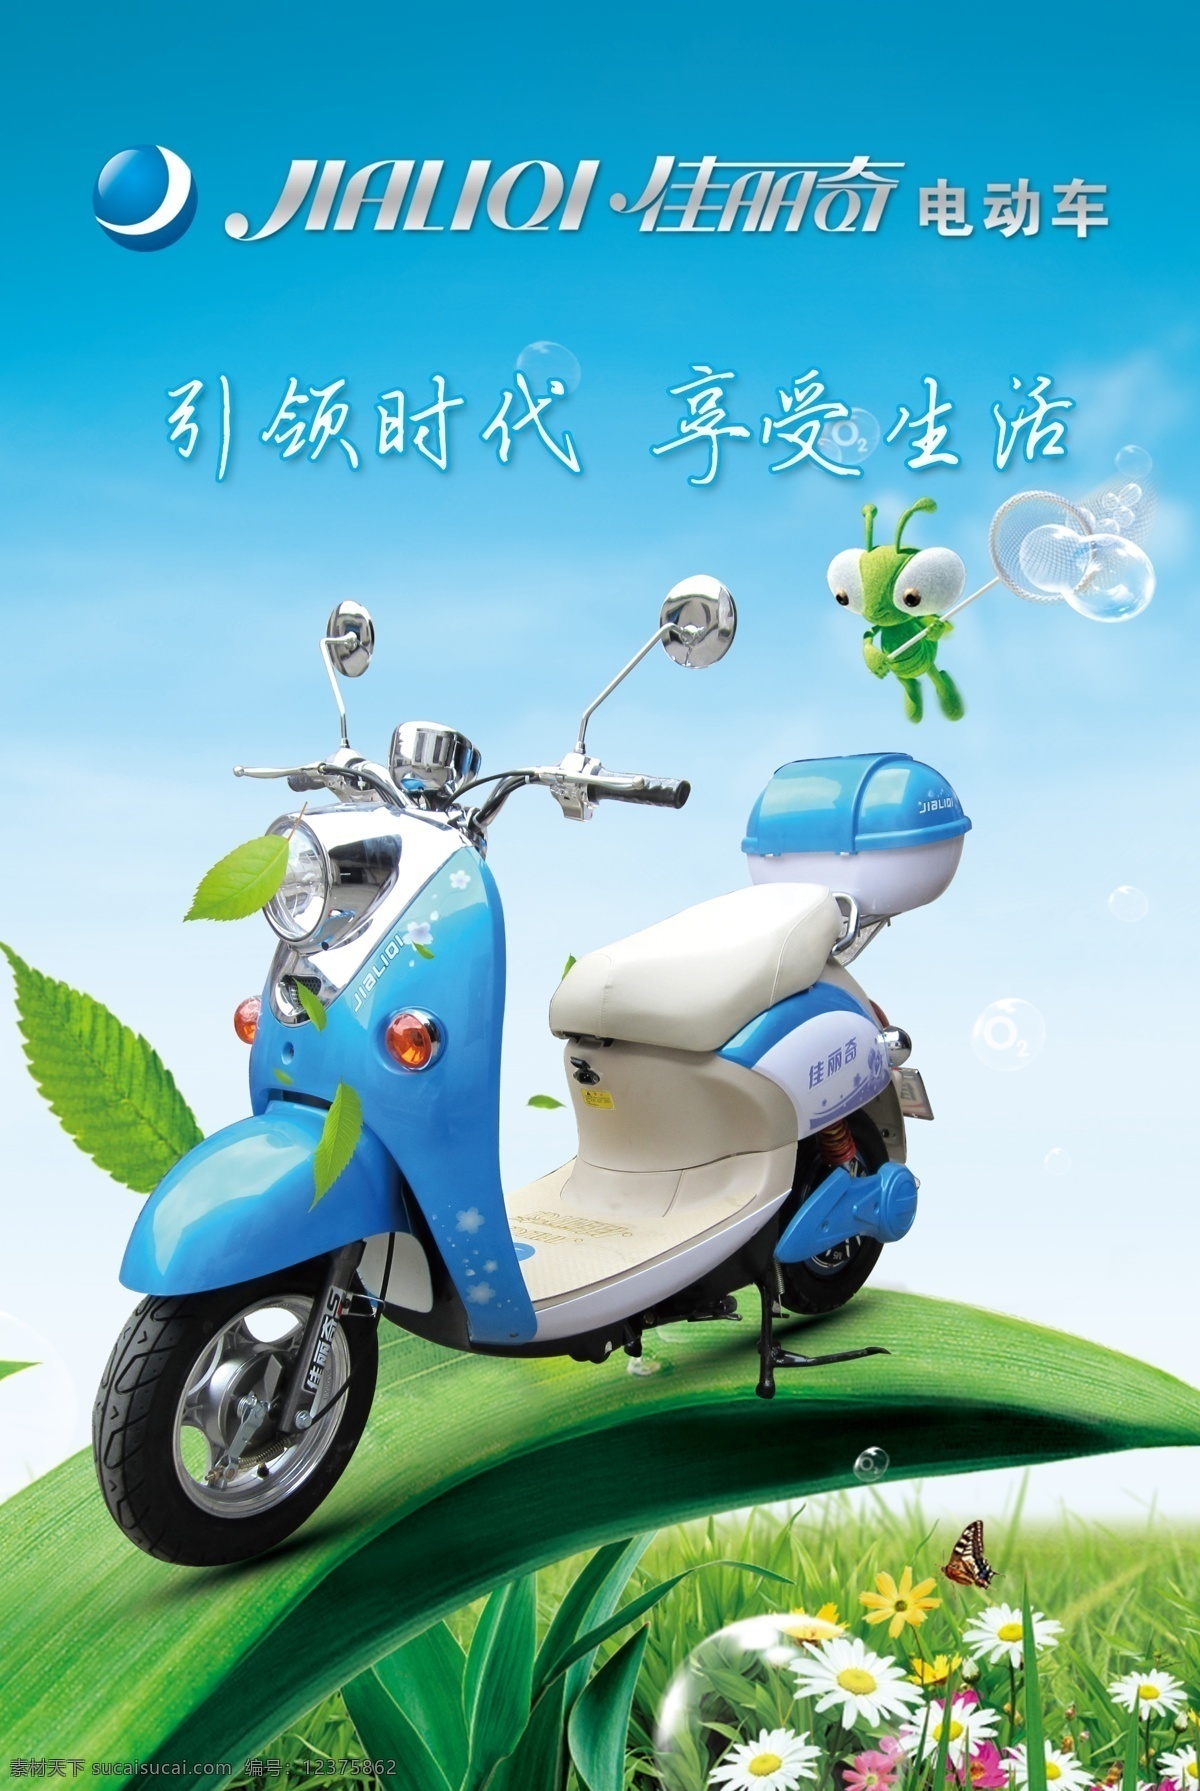 佳丽 奇 电动车 虫子 广告设计模板 花 享受生活 叶子 源文件 佳丽奇电动车 佳丽奇 其他海报设计